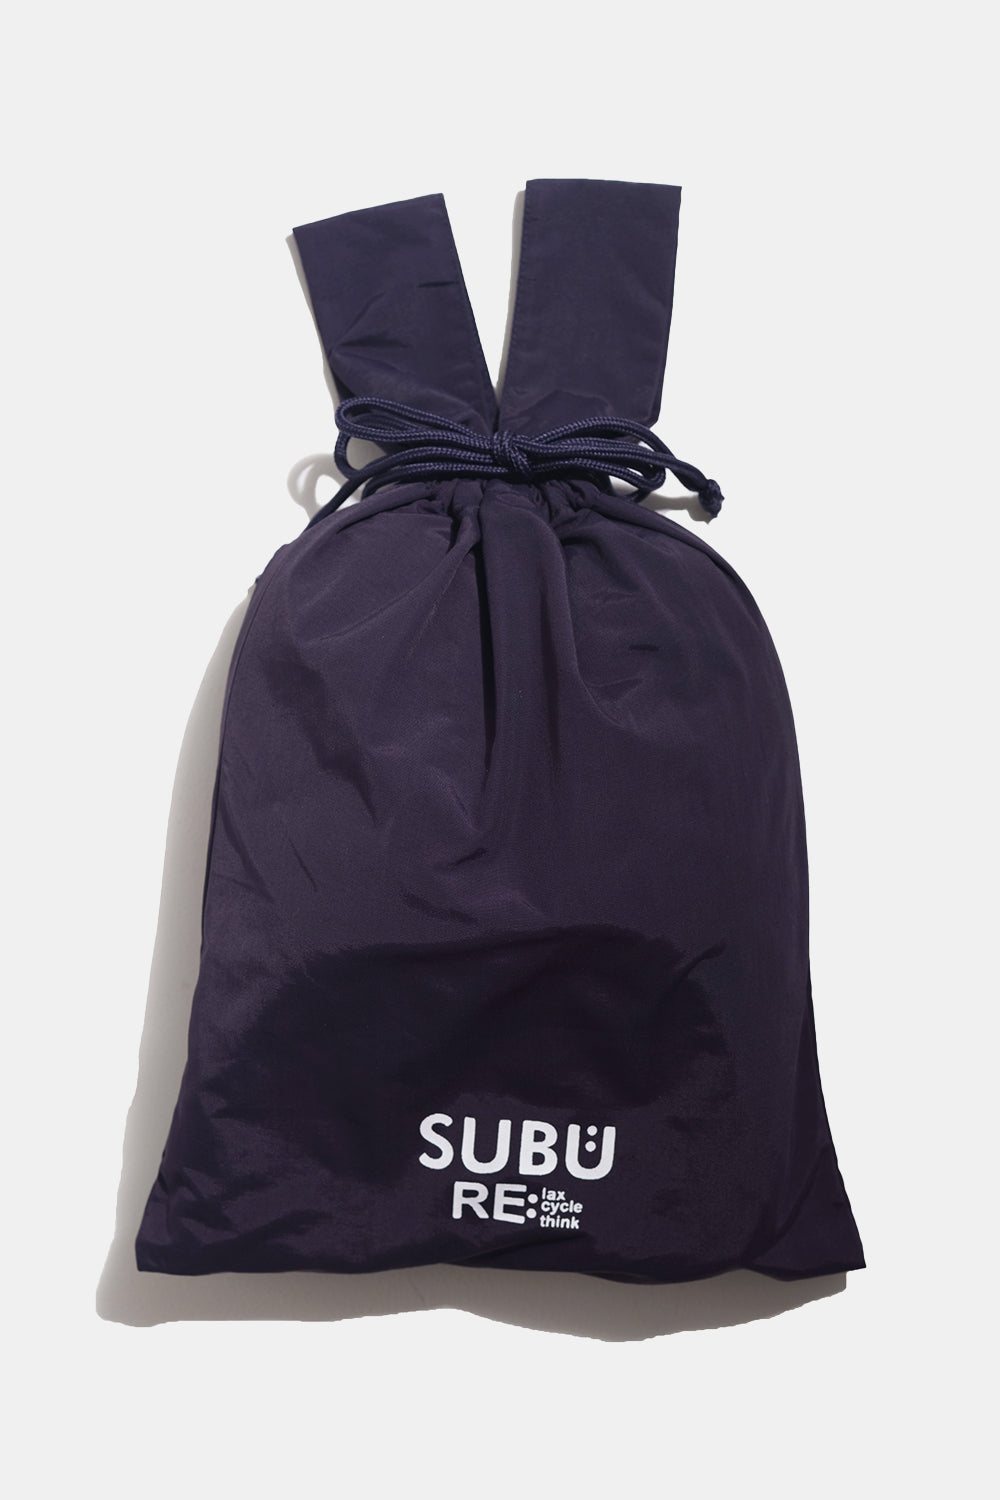 SUBU Indoor Outdoor Re: Slippers (Black) | Number Six